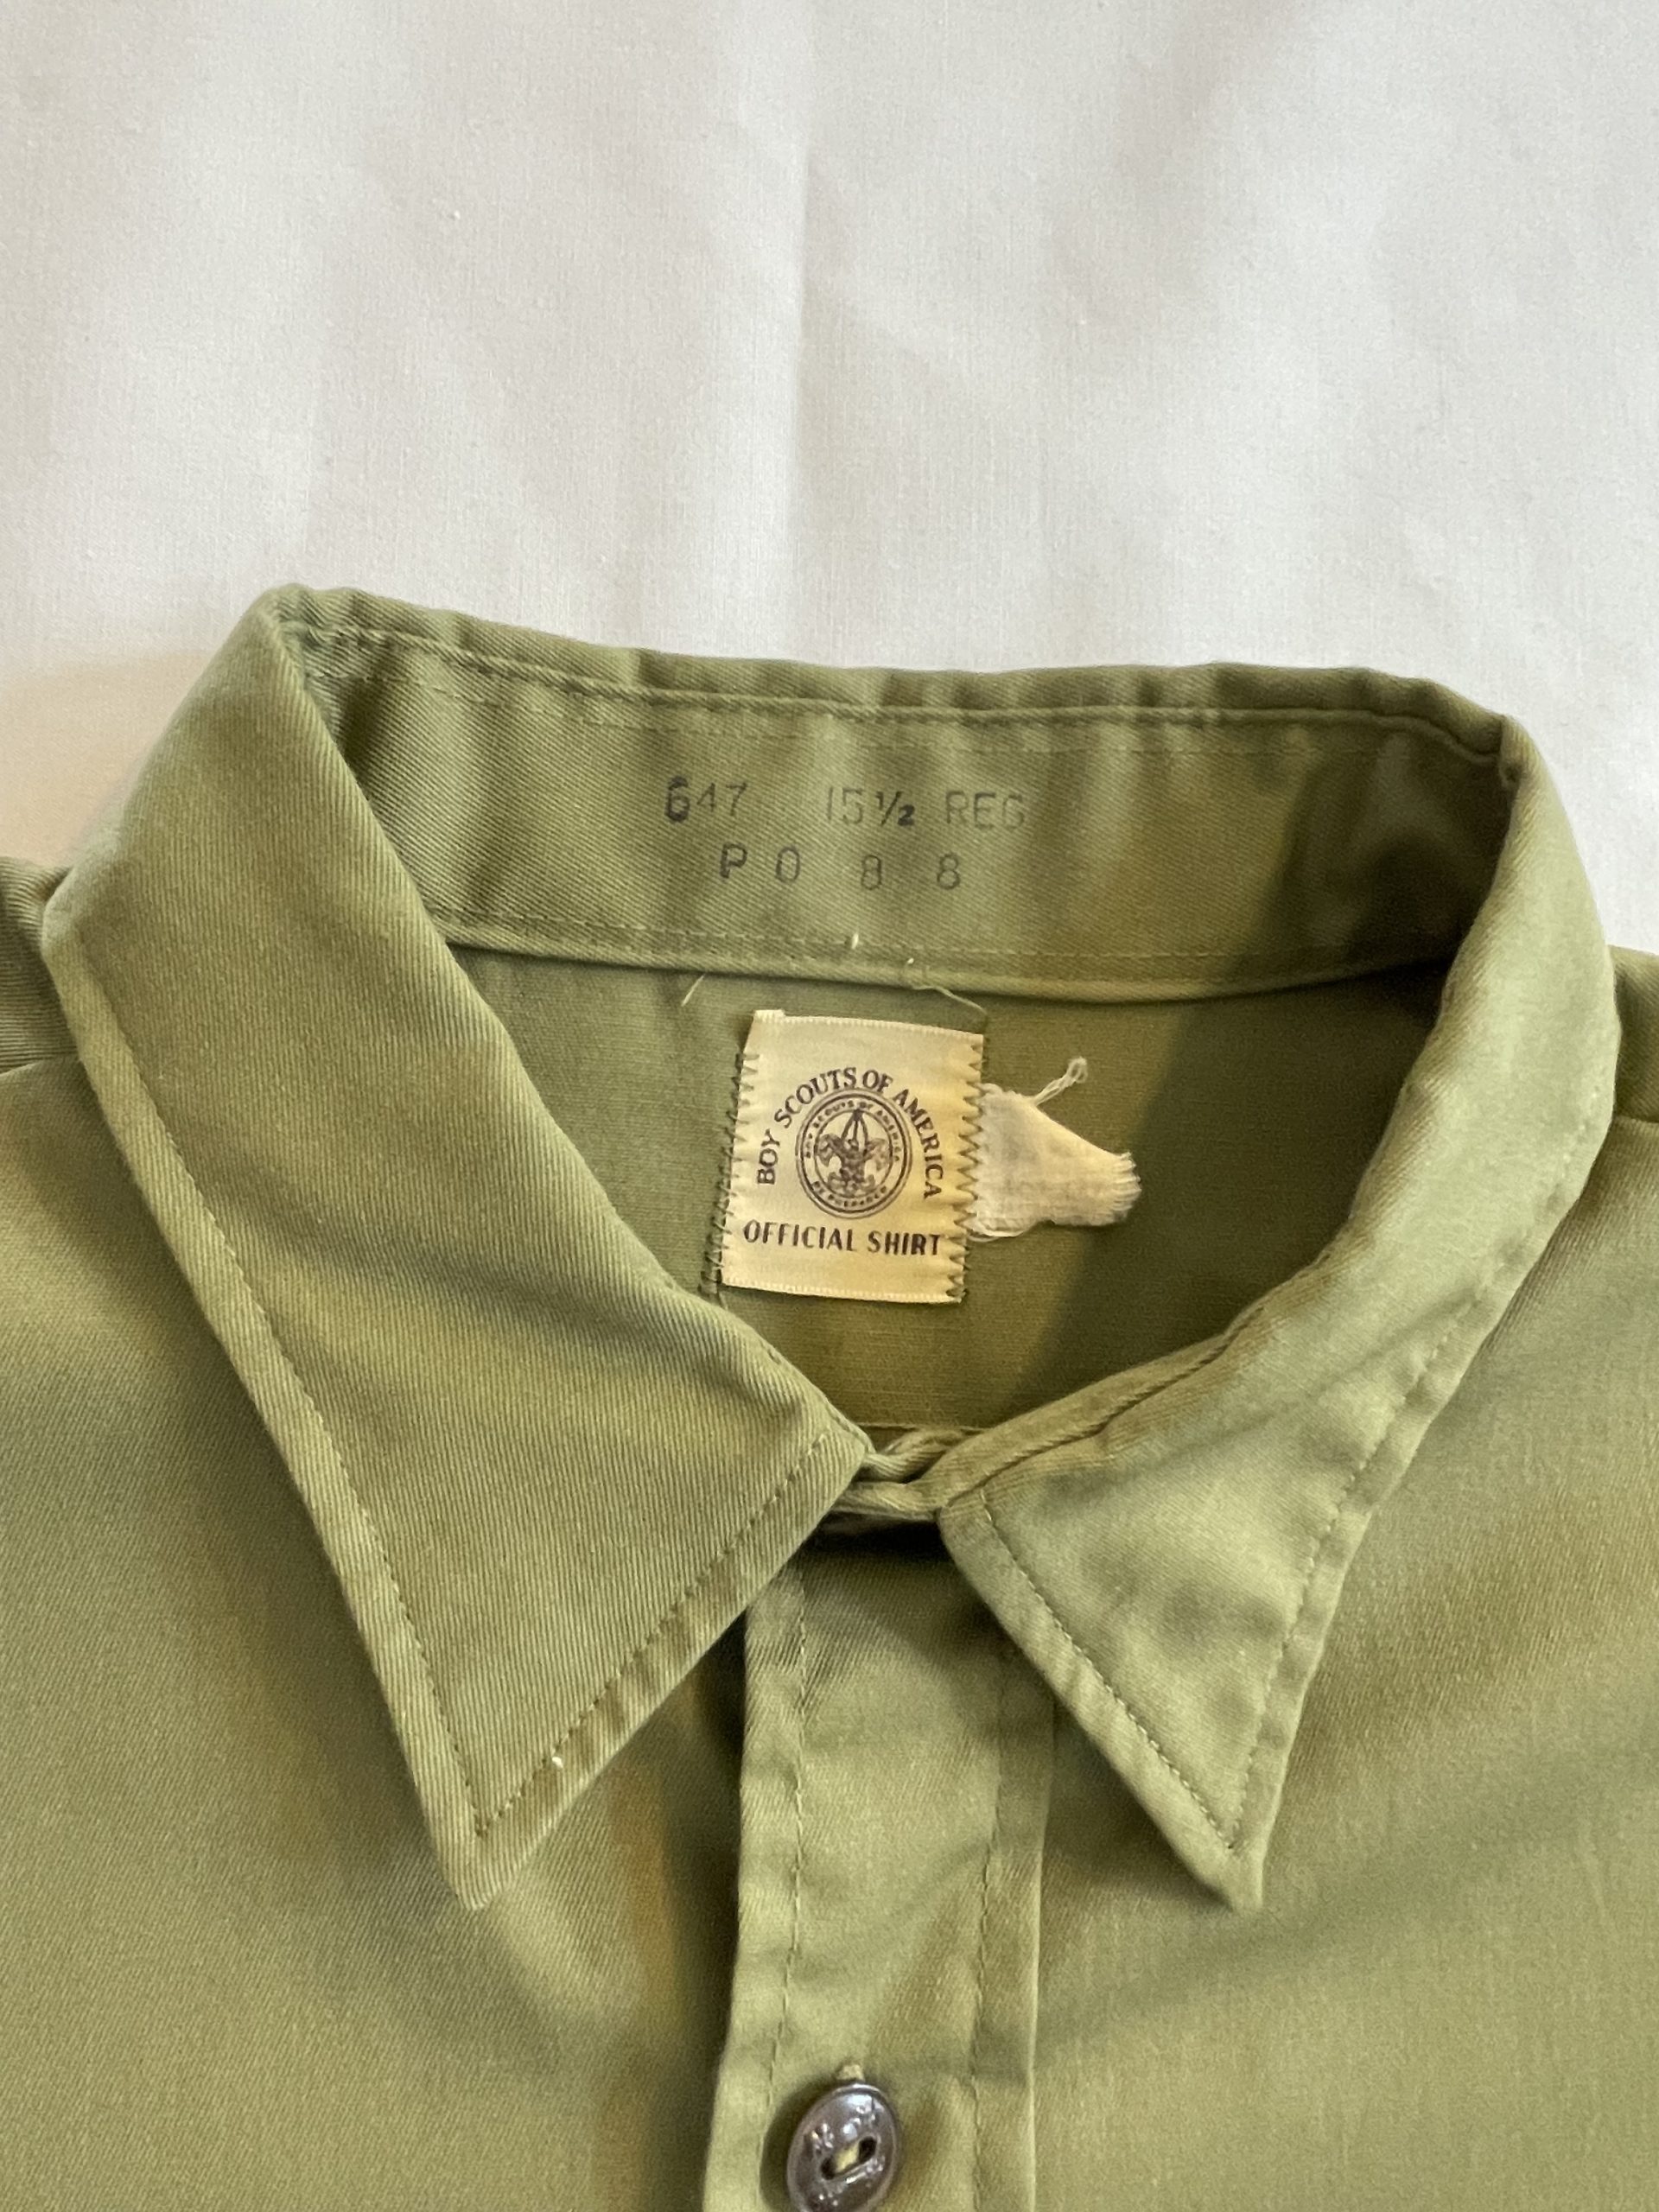 60s ボーイスカウトシャツ ノーカラー オフィシャルシャツ ロゴ刻印ボタン